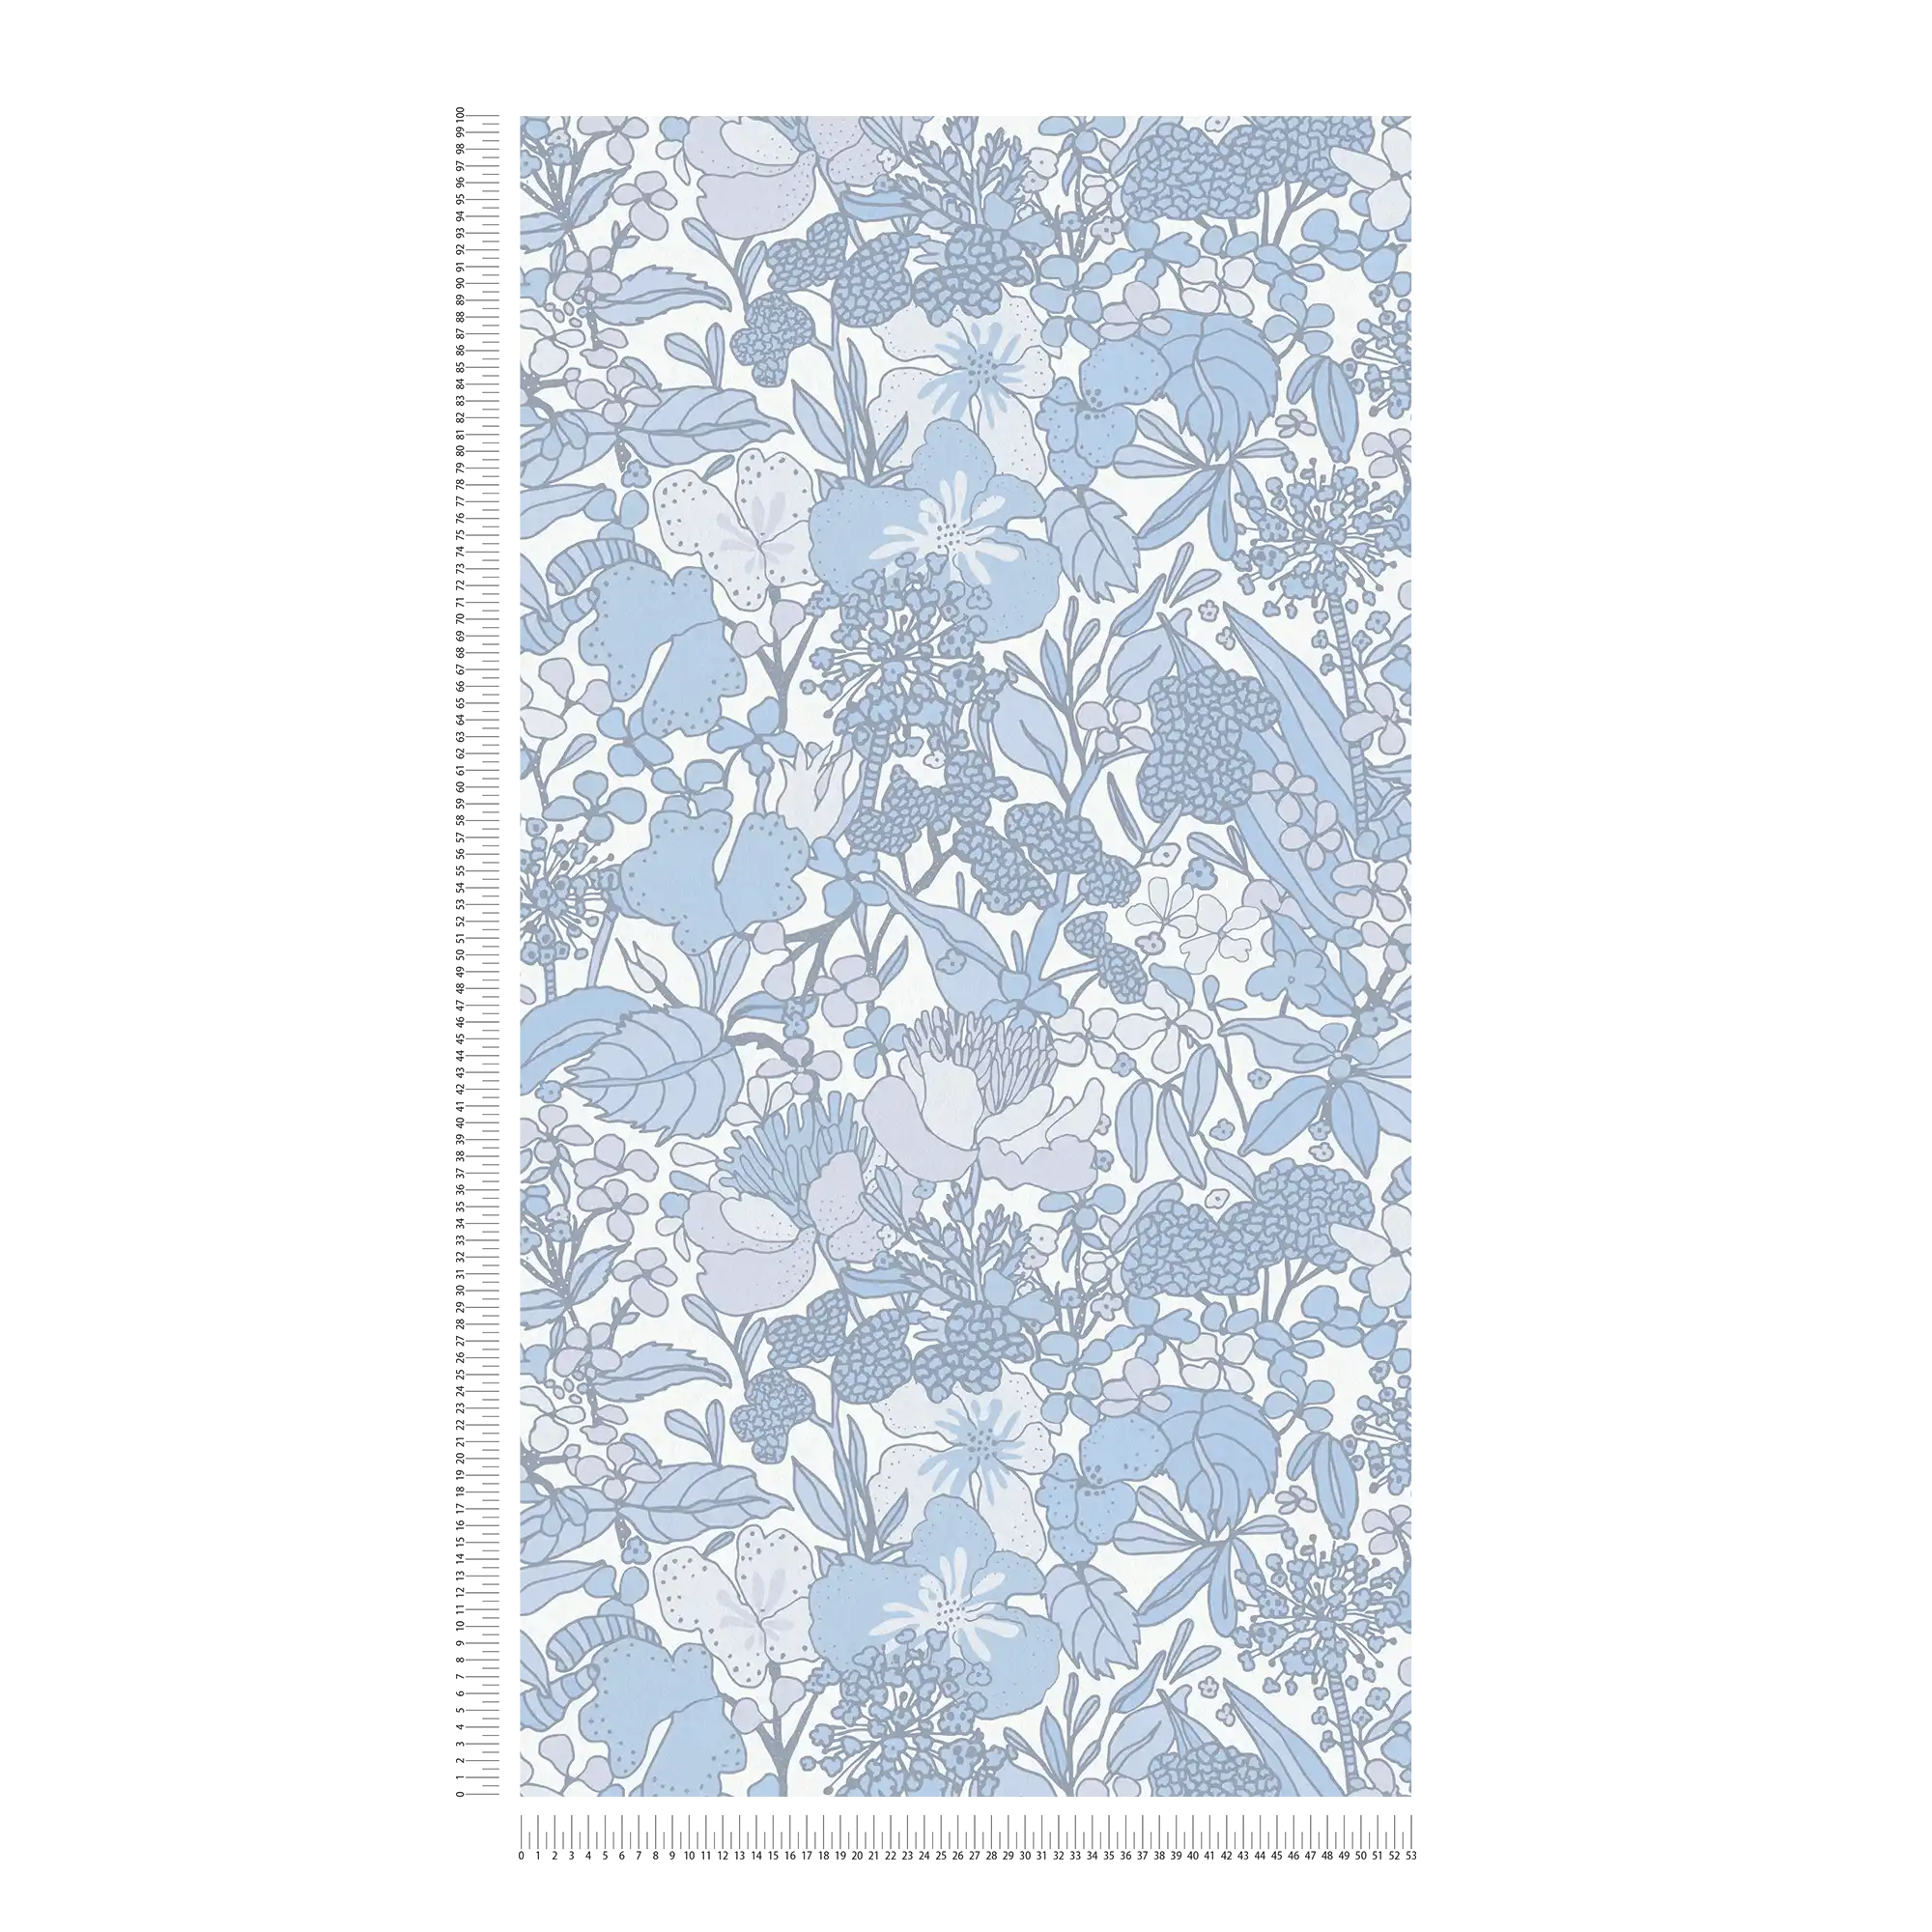             Tapete Blau & Weiß mit 70er Retro Blumenmuster – Grau, Blau, Weiß
        